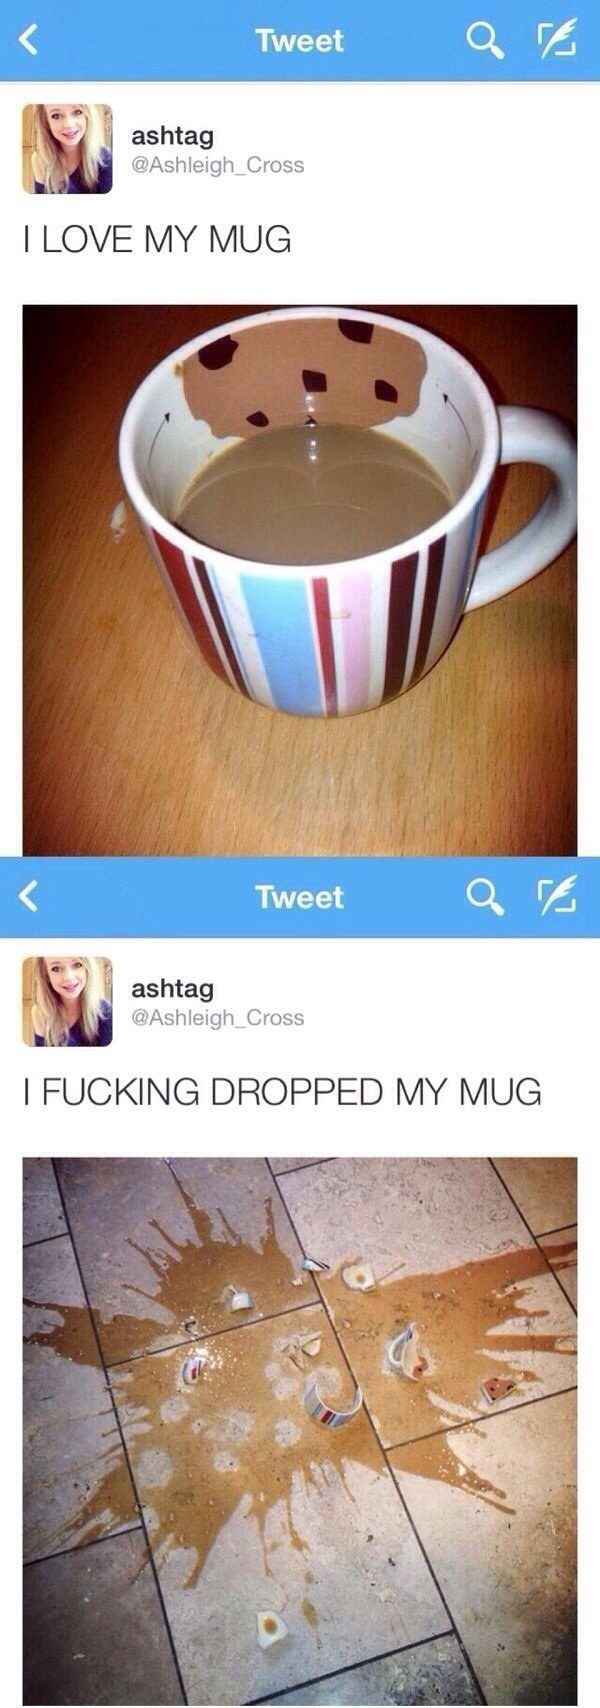 love my mug meme - Tweet Tweet art ashtag I Love My Mug Tweet a ashtag ashtag | Fucking Dropped My Mug